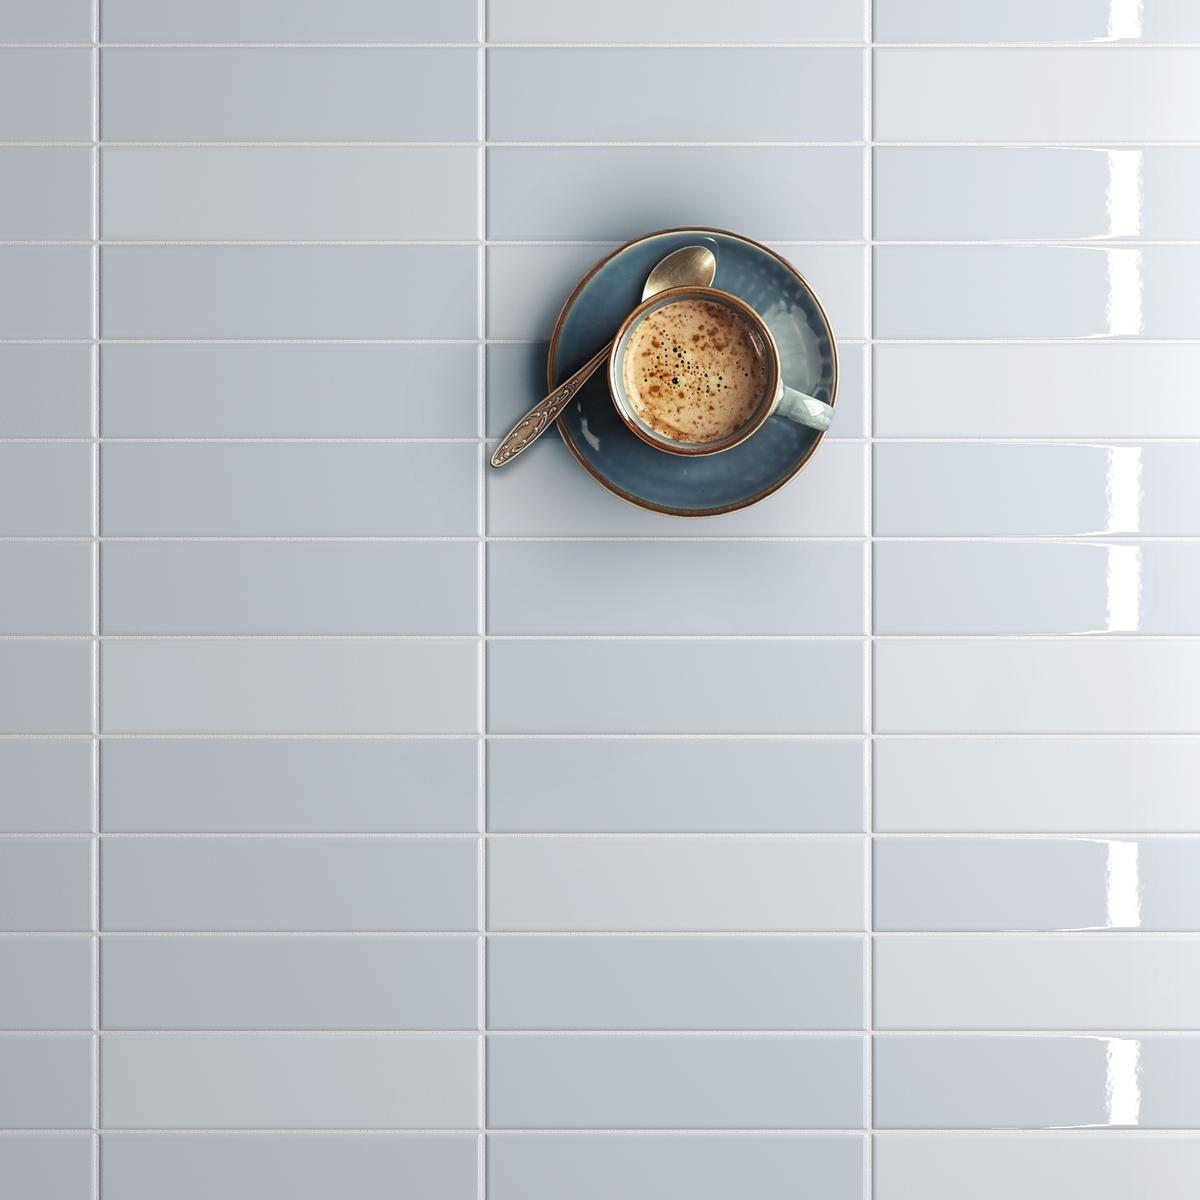 Carrelage uni bleu clair émaillé avec tasse de café posée dessus dans cuisine moderne avec des éléments blancs